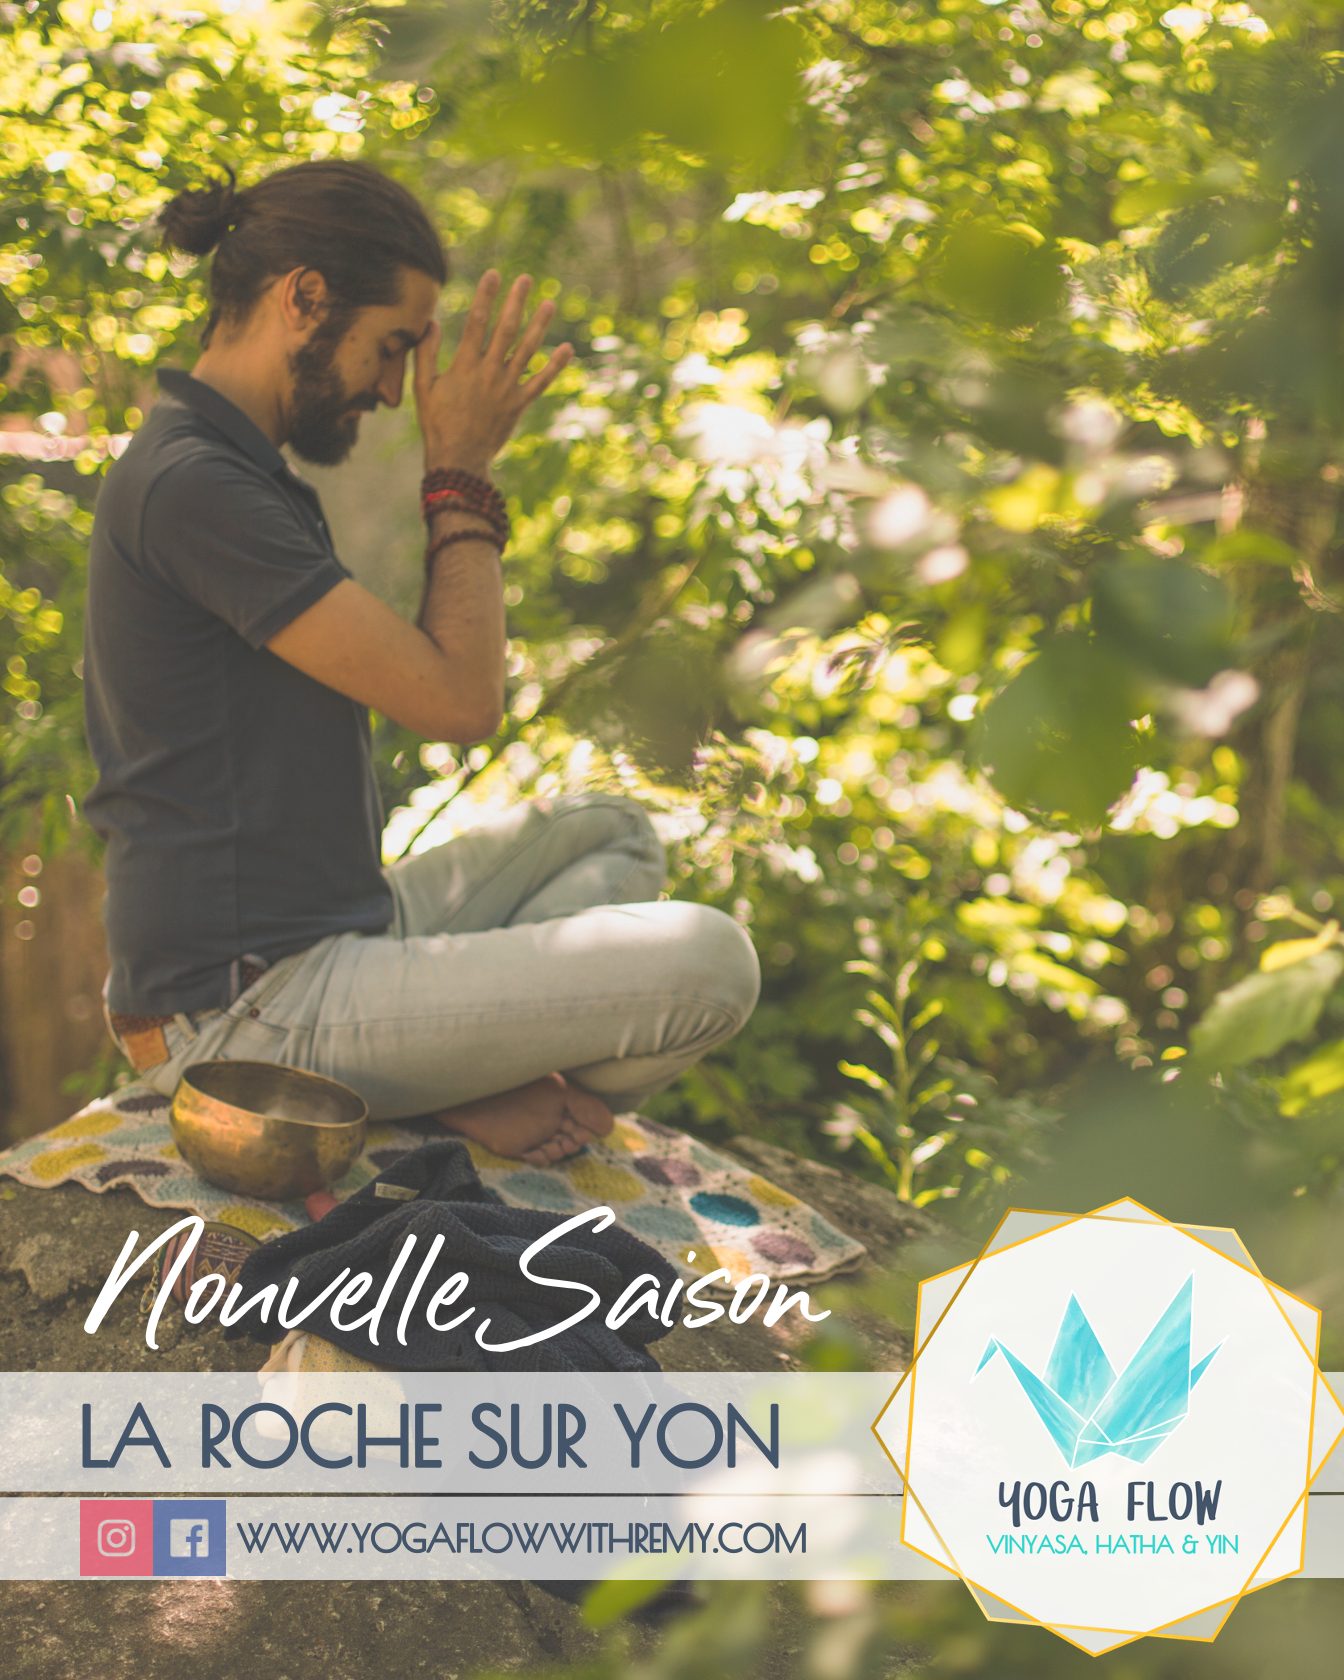 Une nouvelle saison de yoga débute bientôt à La Roche sur Yon avec Yoga Flow with Rémy